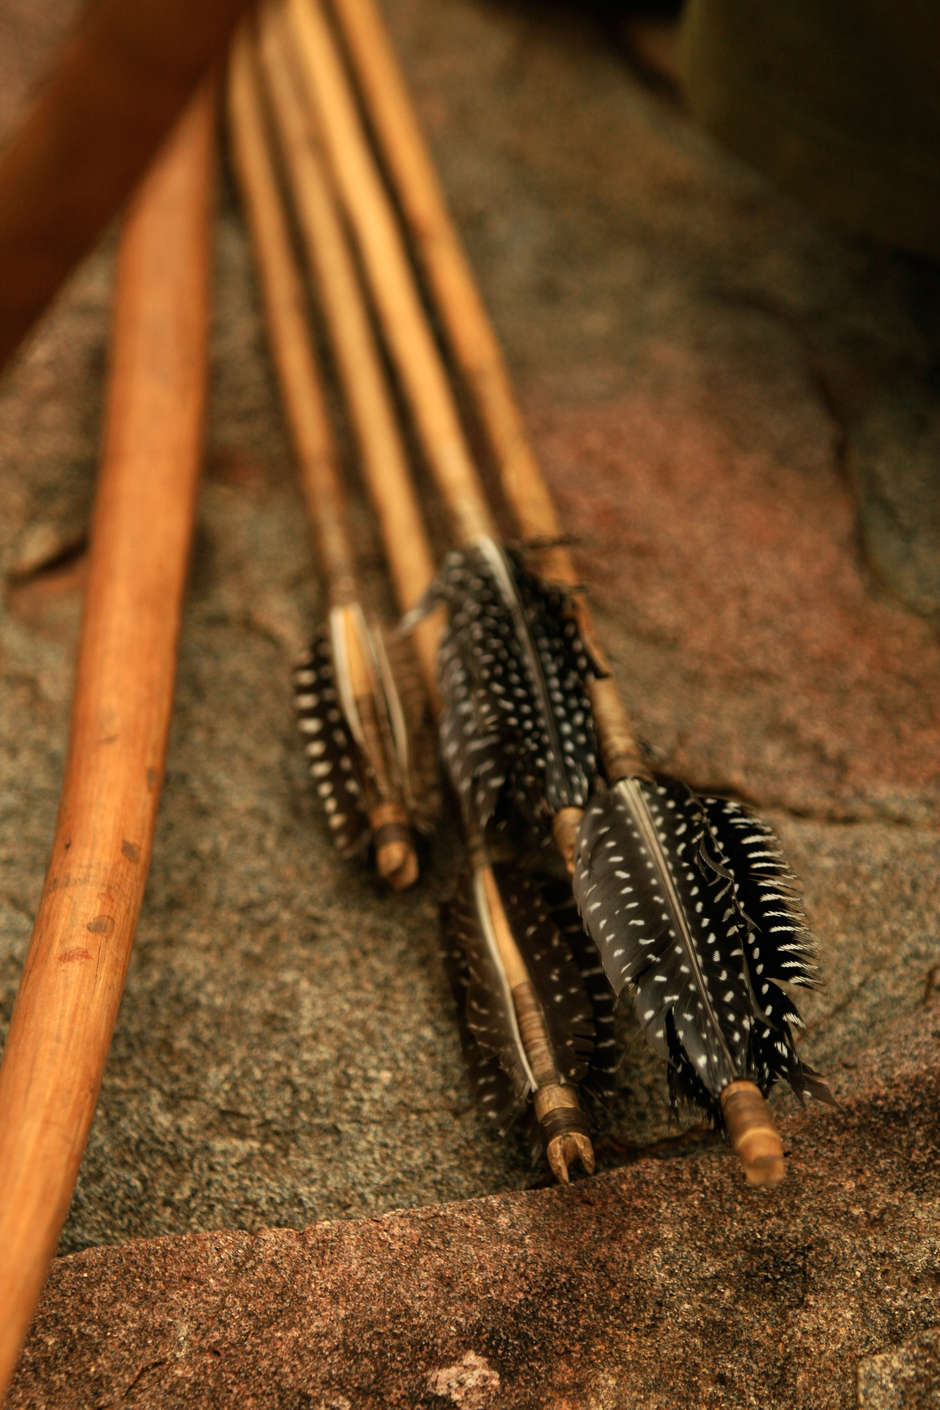 Die Bogensehnen der Hadza in Tansania werden aus den Bändern von Tieren gewonnen, während die Pfeile sorgsam aus _Kongoroko_-Holz gefertigt und mit den Federn von Perlhühnern verziert werden.

Übliche Jagdwaffen sind Pfeil und Bogen, Blasrohr, Schläger, Speer oder Harpune und Schusswaffen.

Im Amazonasgebiet können Blasrohre länger als 2,5 Meter sein. Die Blasrohre der Penan (_Keleput_) sind circa 1,8 Meter lang und aus Hartholz gefertigt.  

Aka-„Pygmäen“ stellen Fallen mit Kletterpflanzen und  jagen mit großen Netzen. Auch die Frauen nehmen an der Jagd teil, indem sie die Tiere mit Gesang und Rufen aus dem Unterholz scheuchen.  